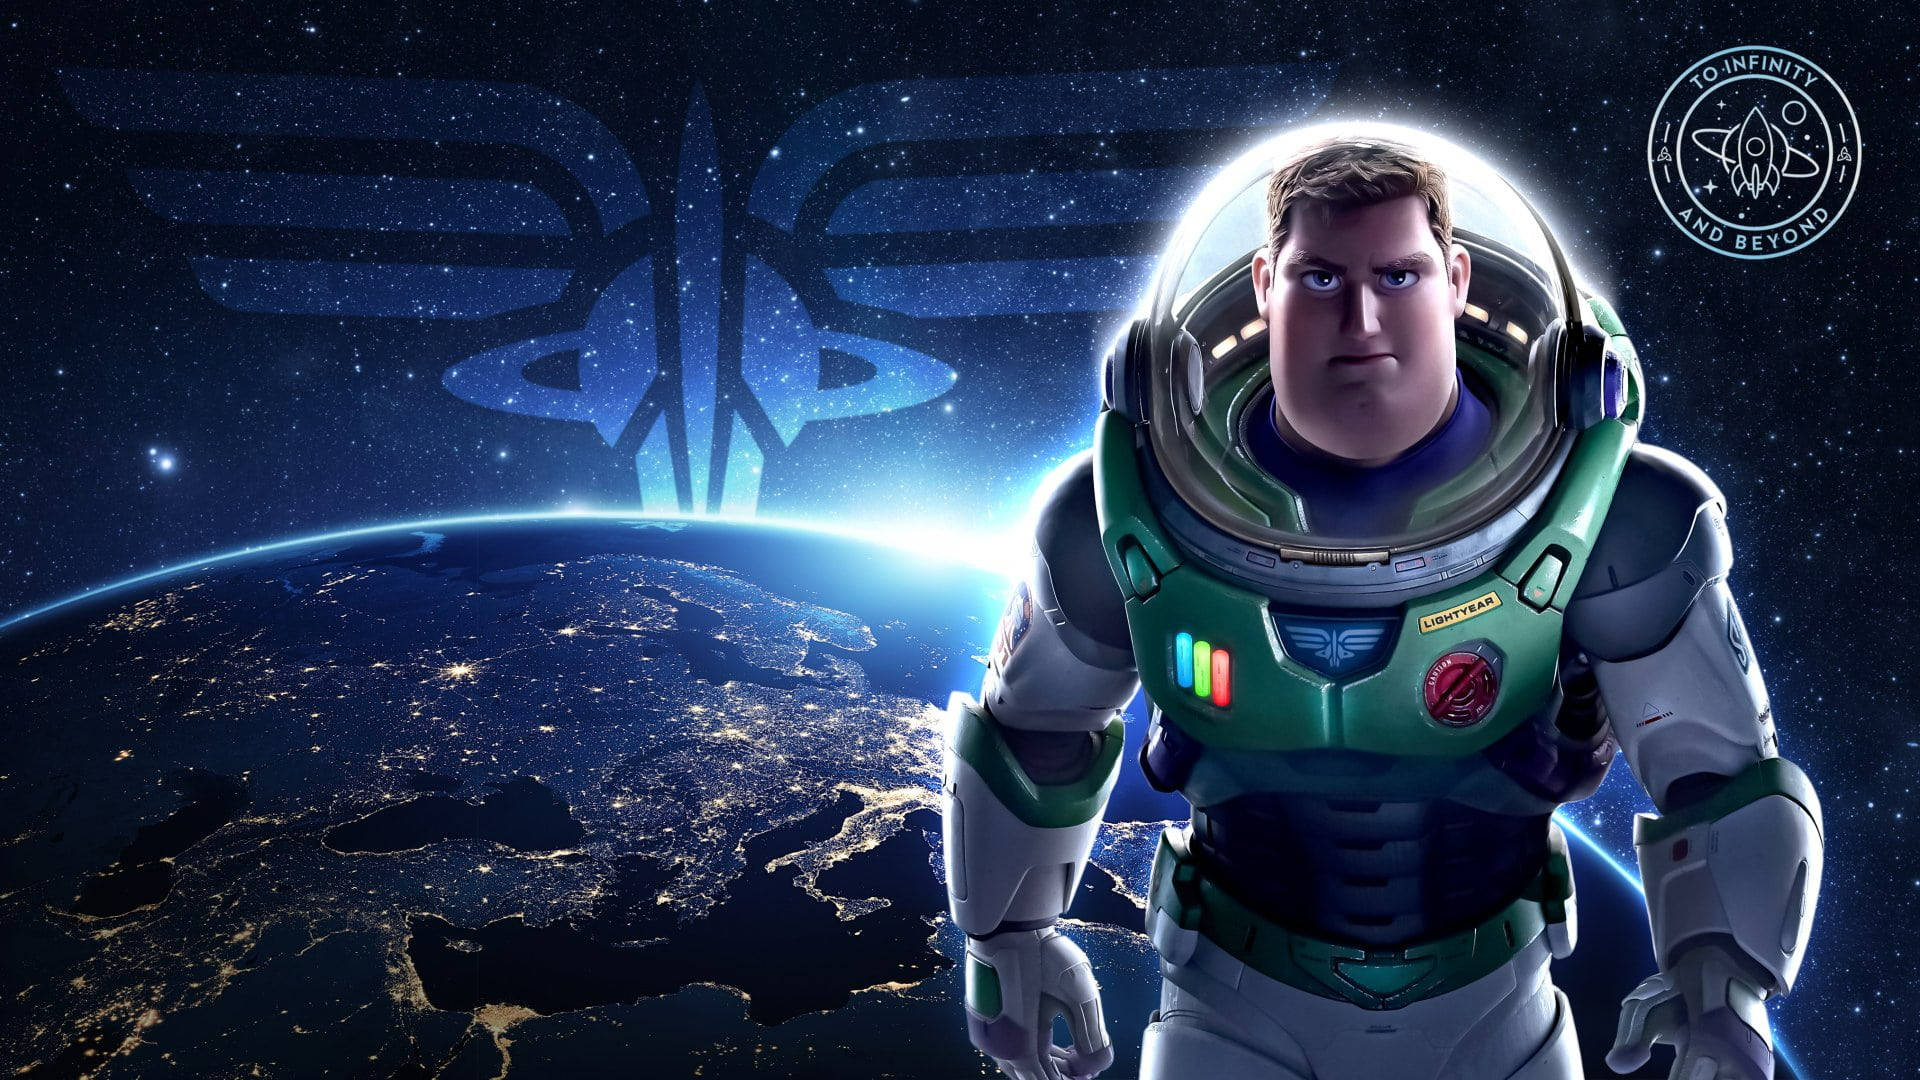 Buzz Lightyear af Star Command 3D Art Version. Wallpaper